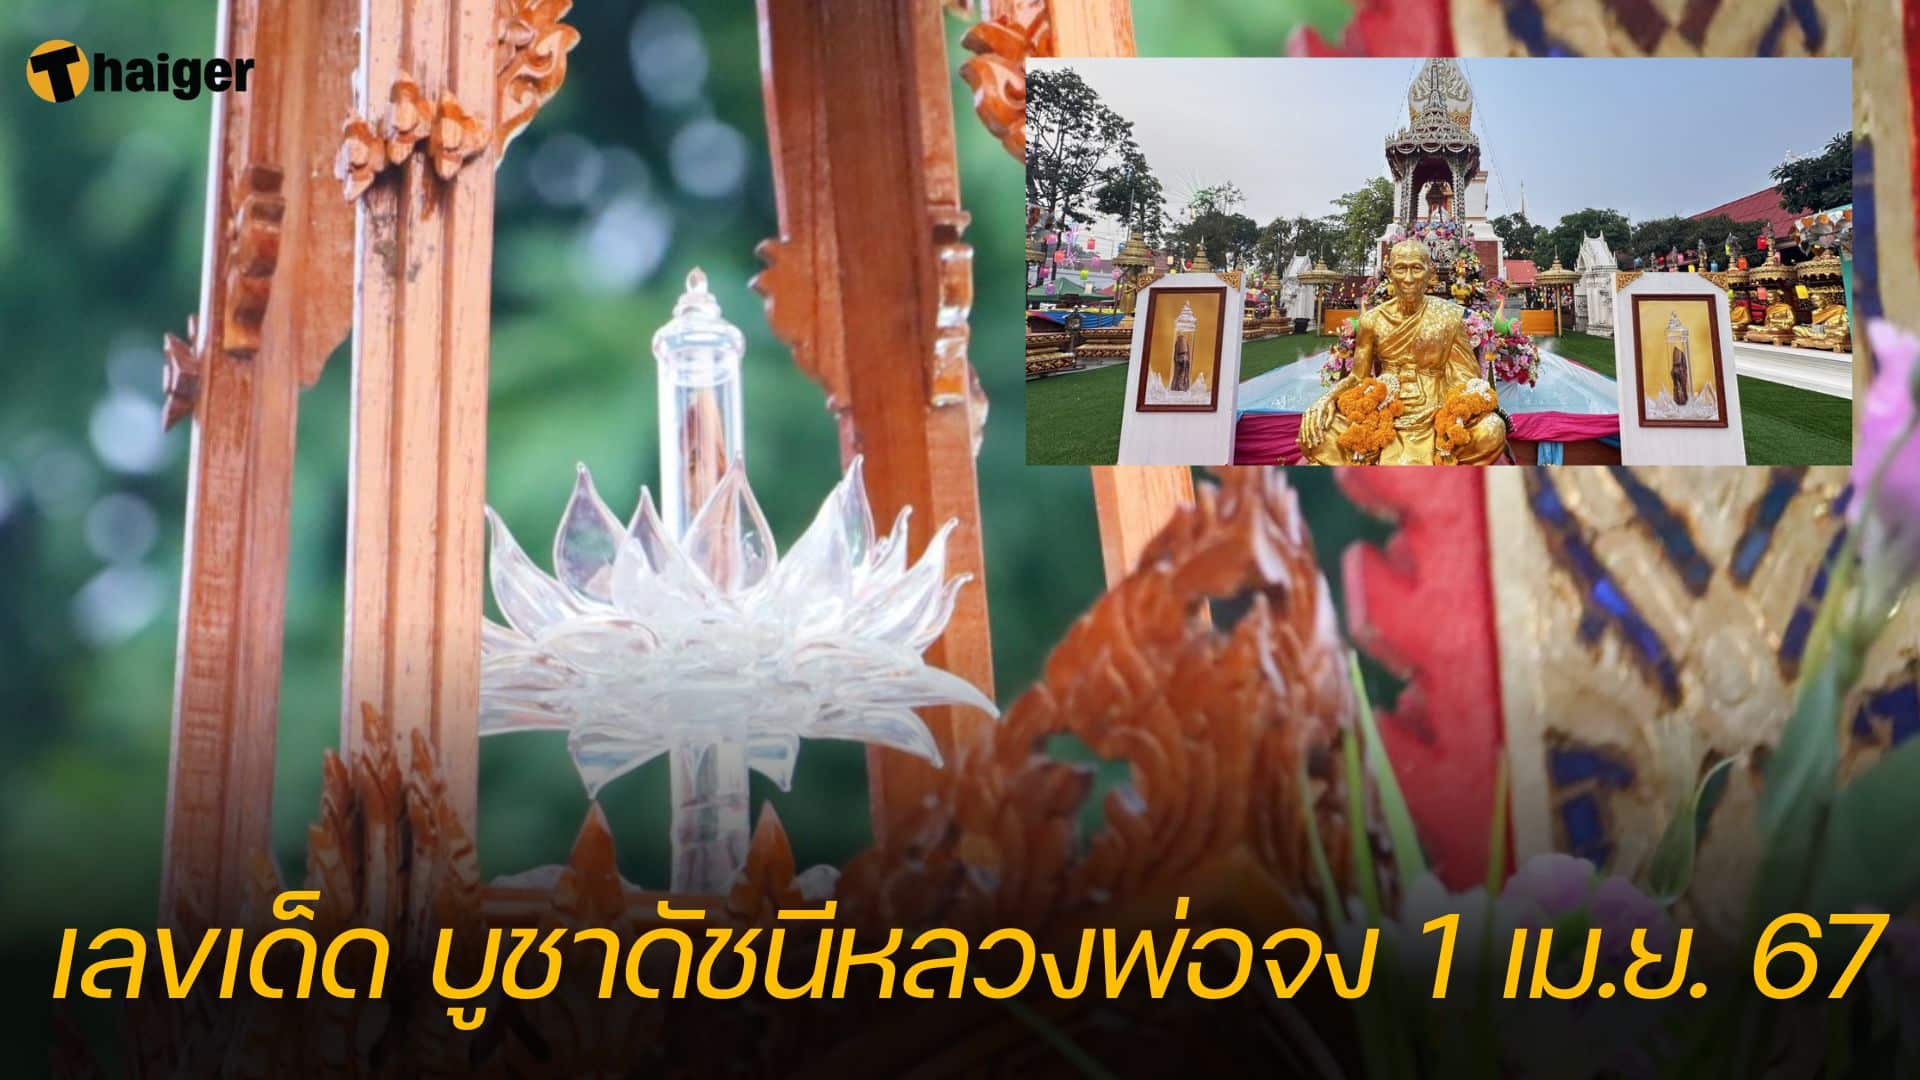 เลขเด็ด อัญเชิญ ดัชนีหลวงพ่อจง พิธีศักดิ์สิทธิ์ มีเพียงปีละครั้ง | Thaiger ข่าวไทย